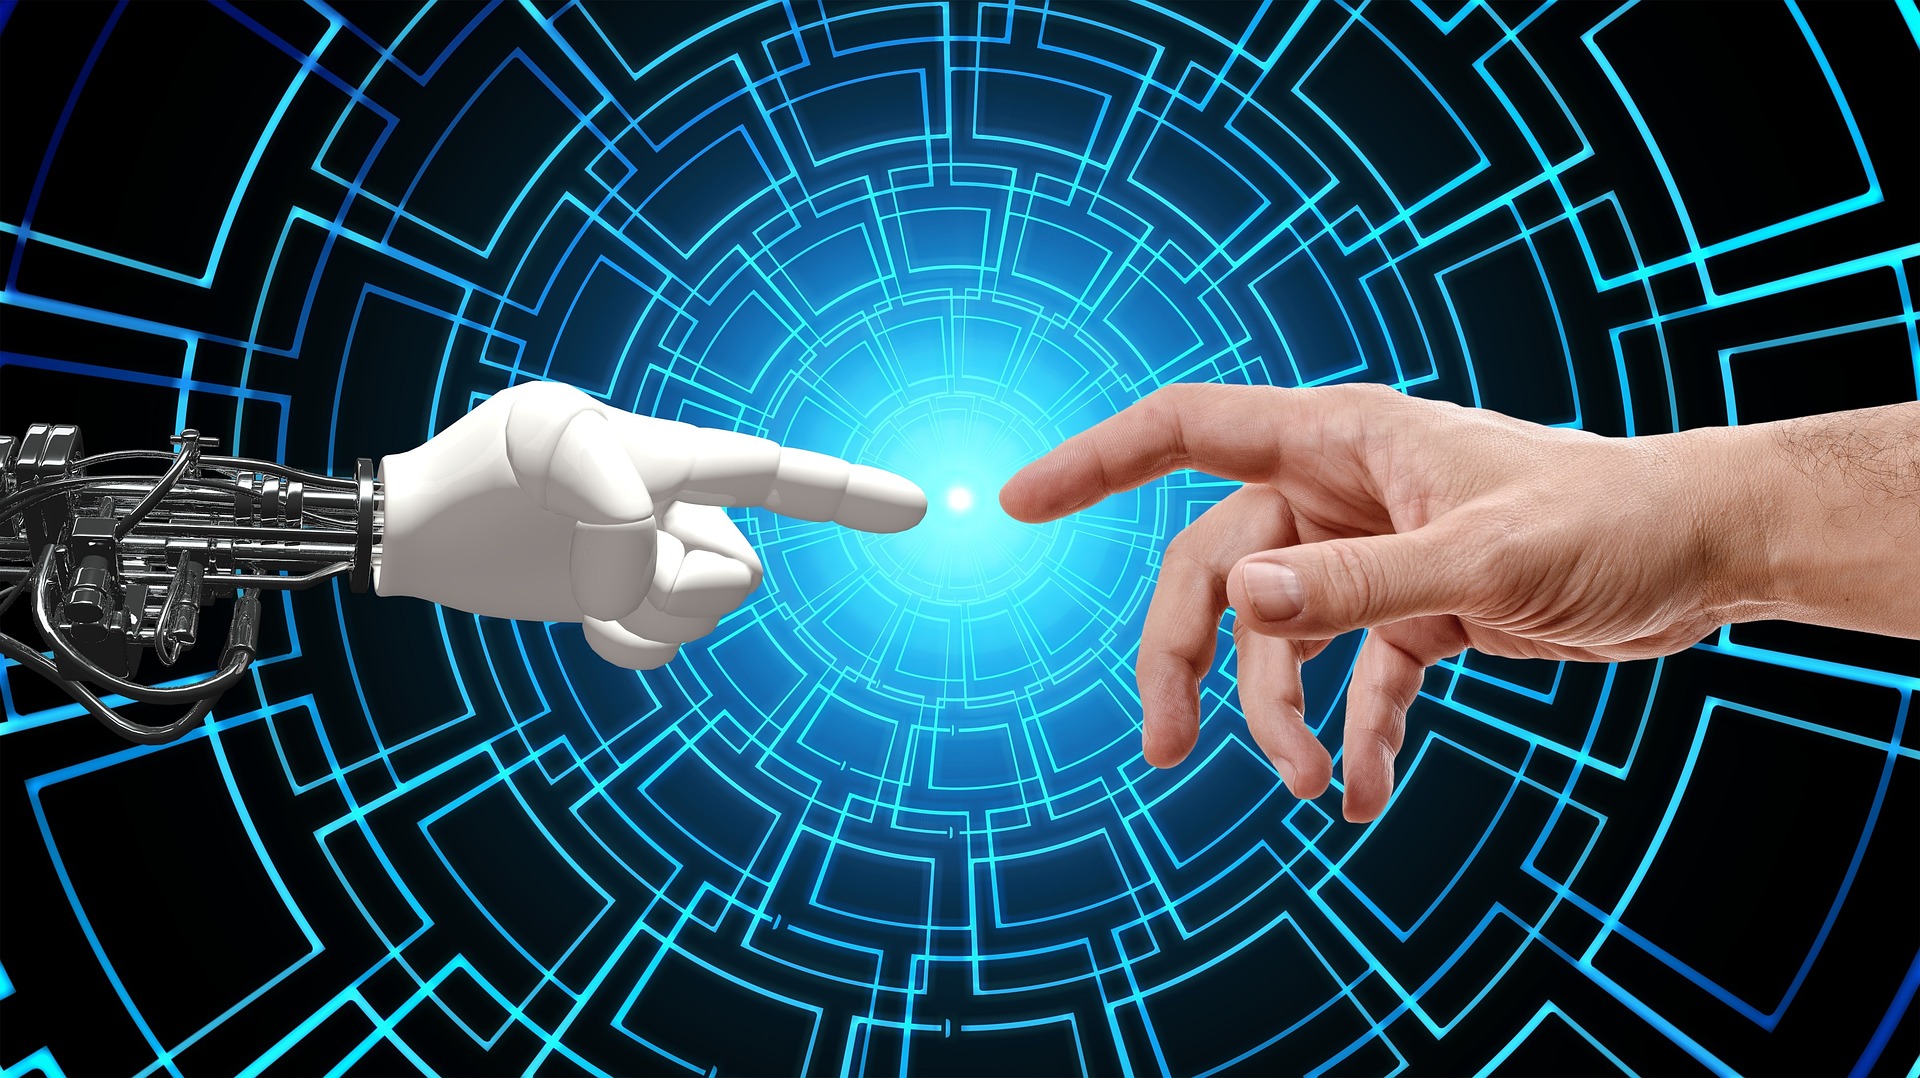 Bill Gates aseguró que los agentes de IA serán como "un amigo cercano" en los próximos años